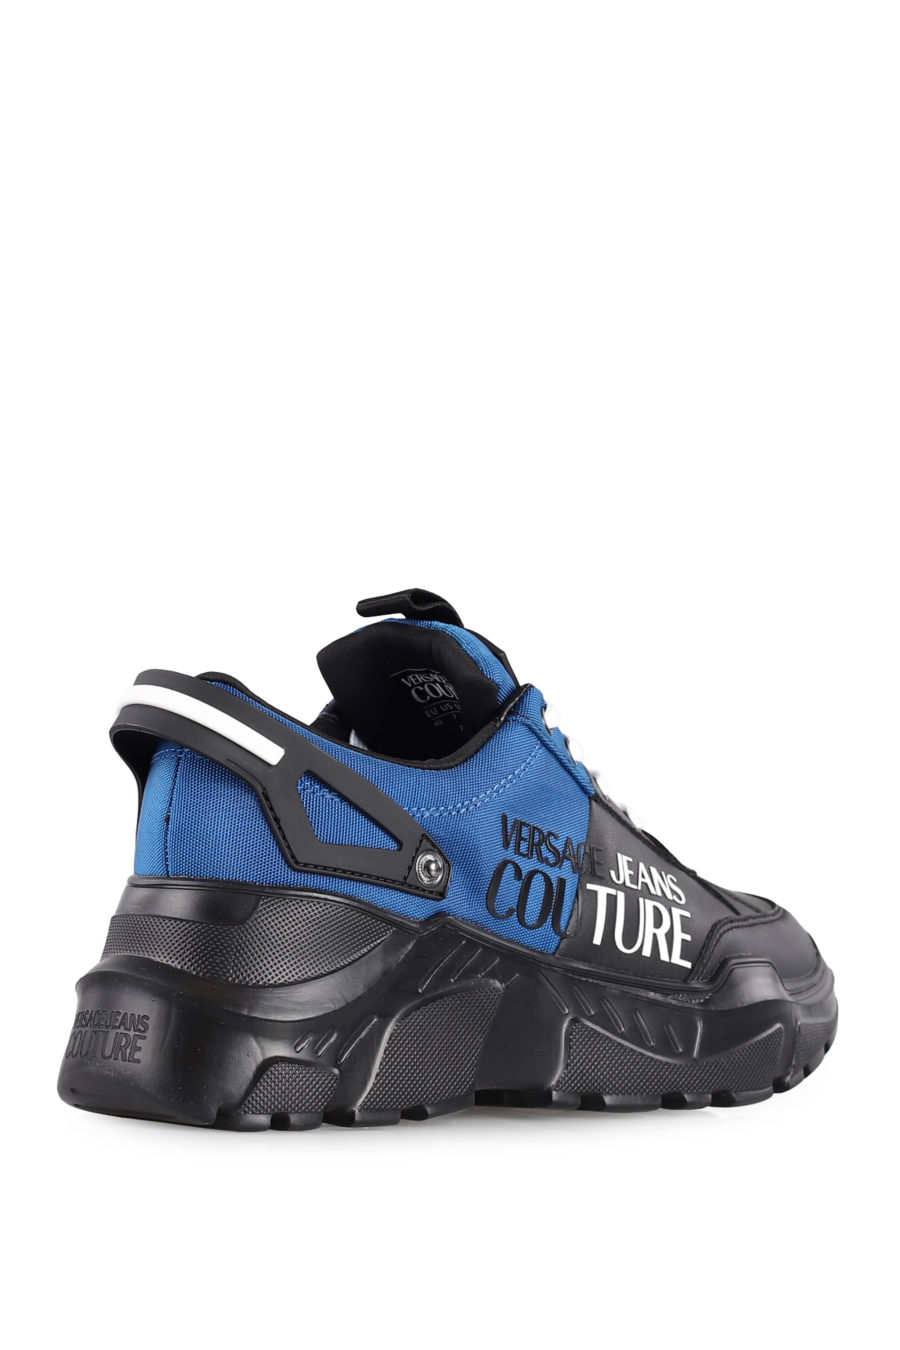 Zapatillas "Speedtrack" de color negro y azul - IMG 1023